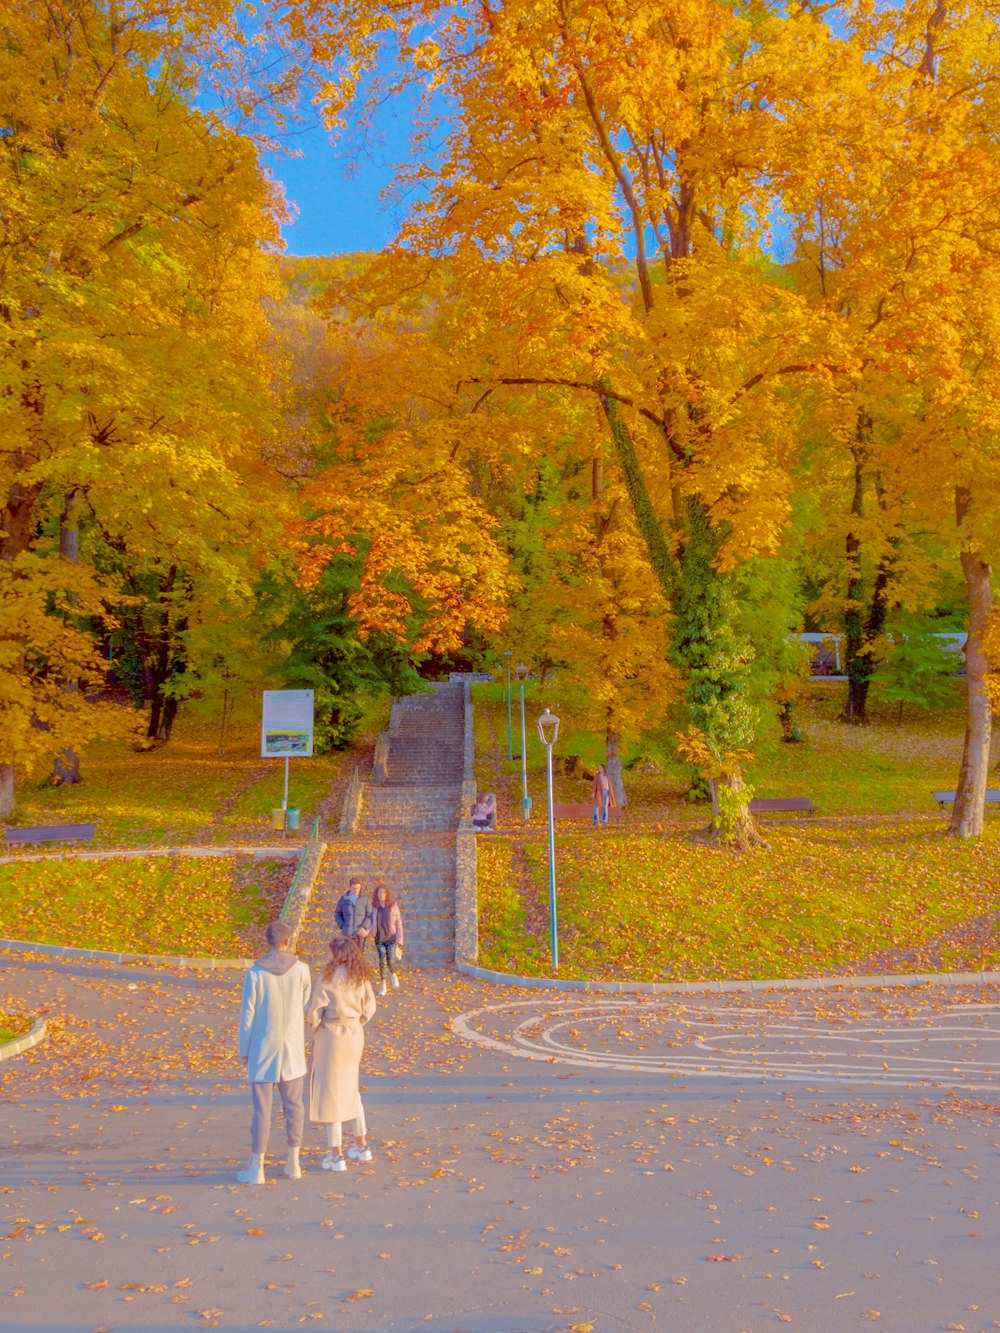 Un grupo de personas caminando por una carretera en el otoño